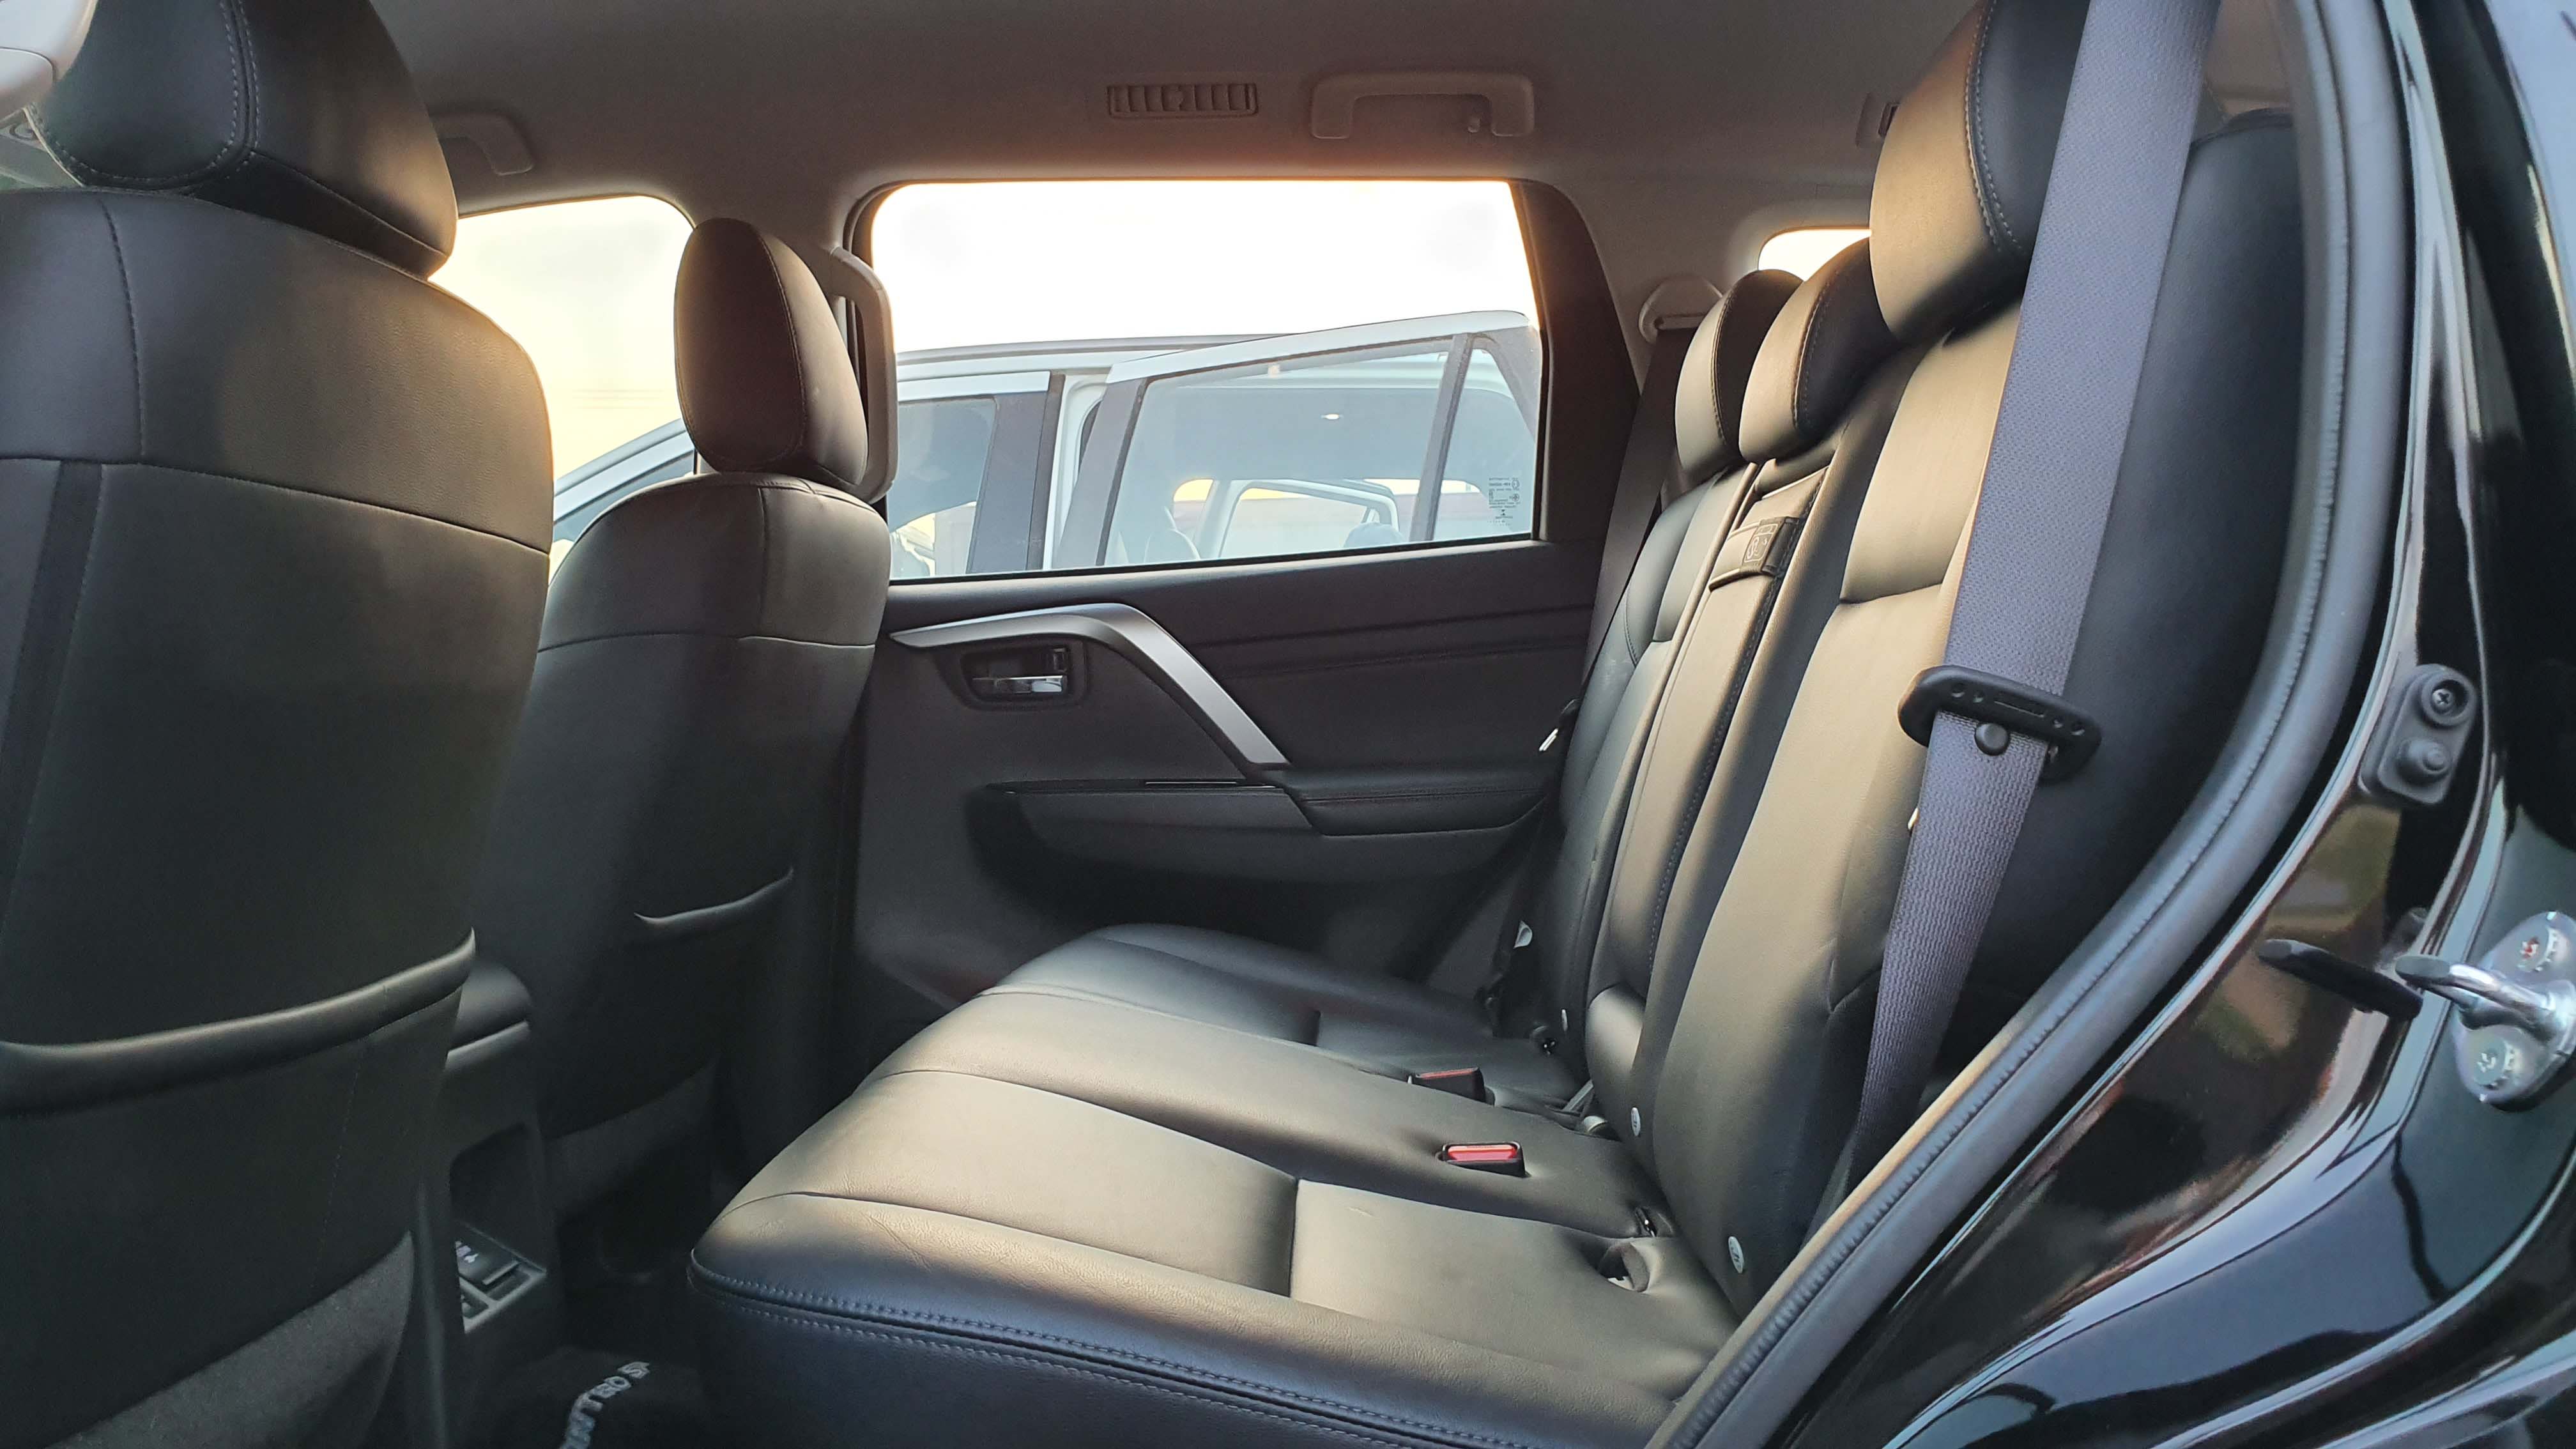 Mitsubishi Montero Sport passenger seat